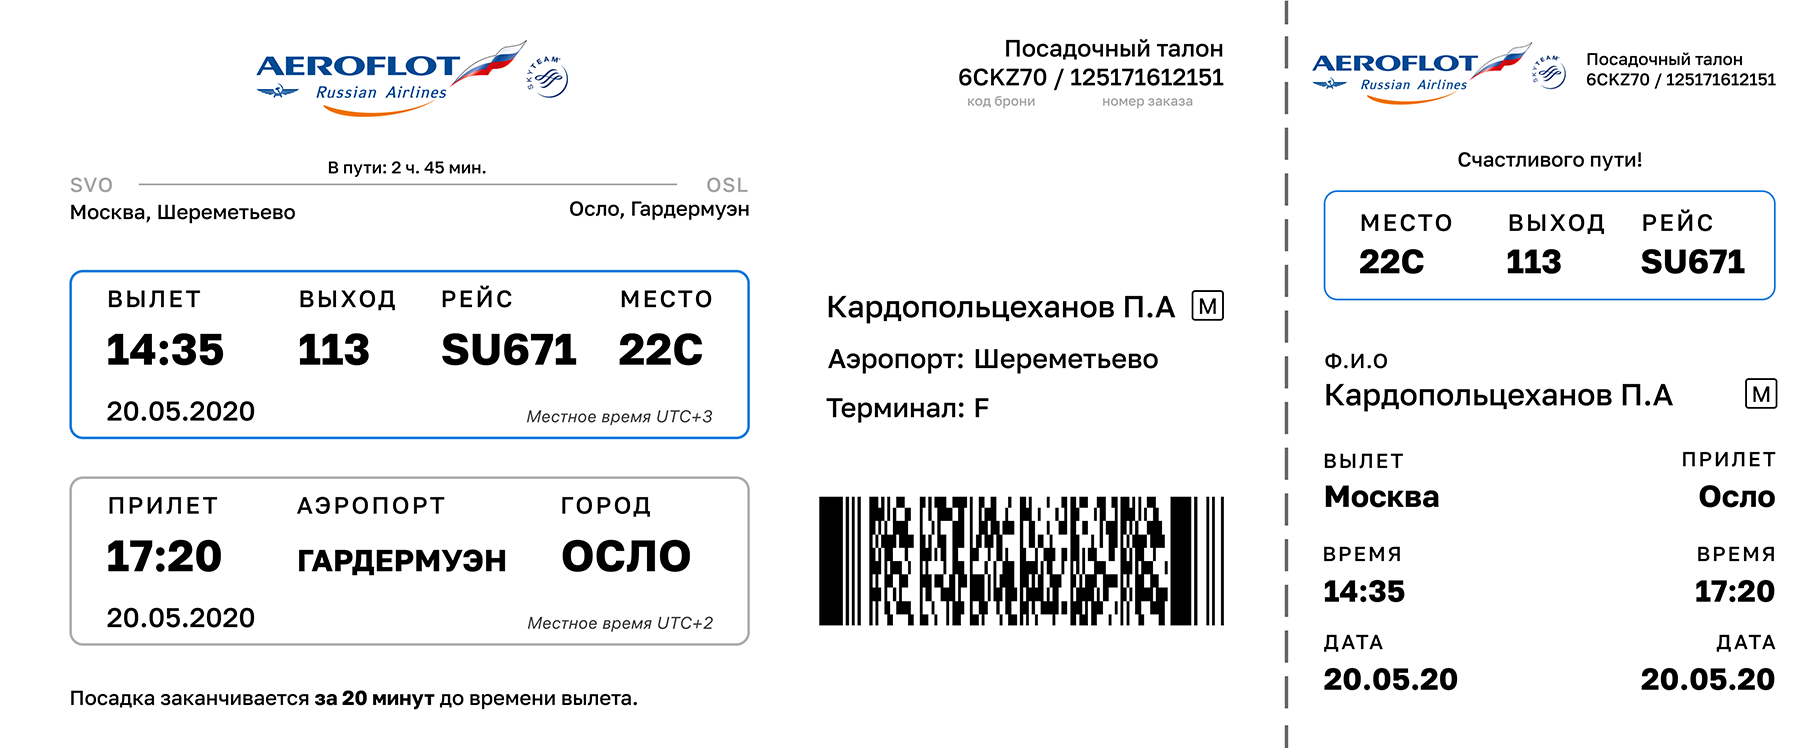 Посадочный талон Аэрофлот Москва. Посадочный билет Аэрофлот. Посадочный талон Аэрофлот Шереметьево. Посадочный талон Аэрофлот пример.